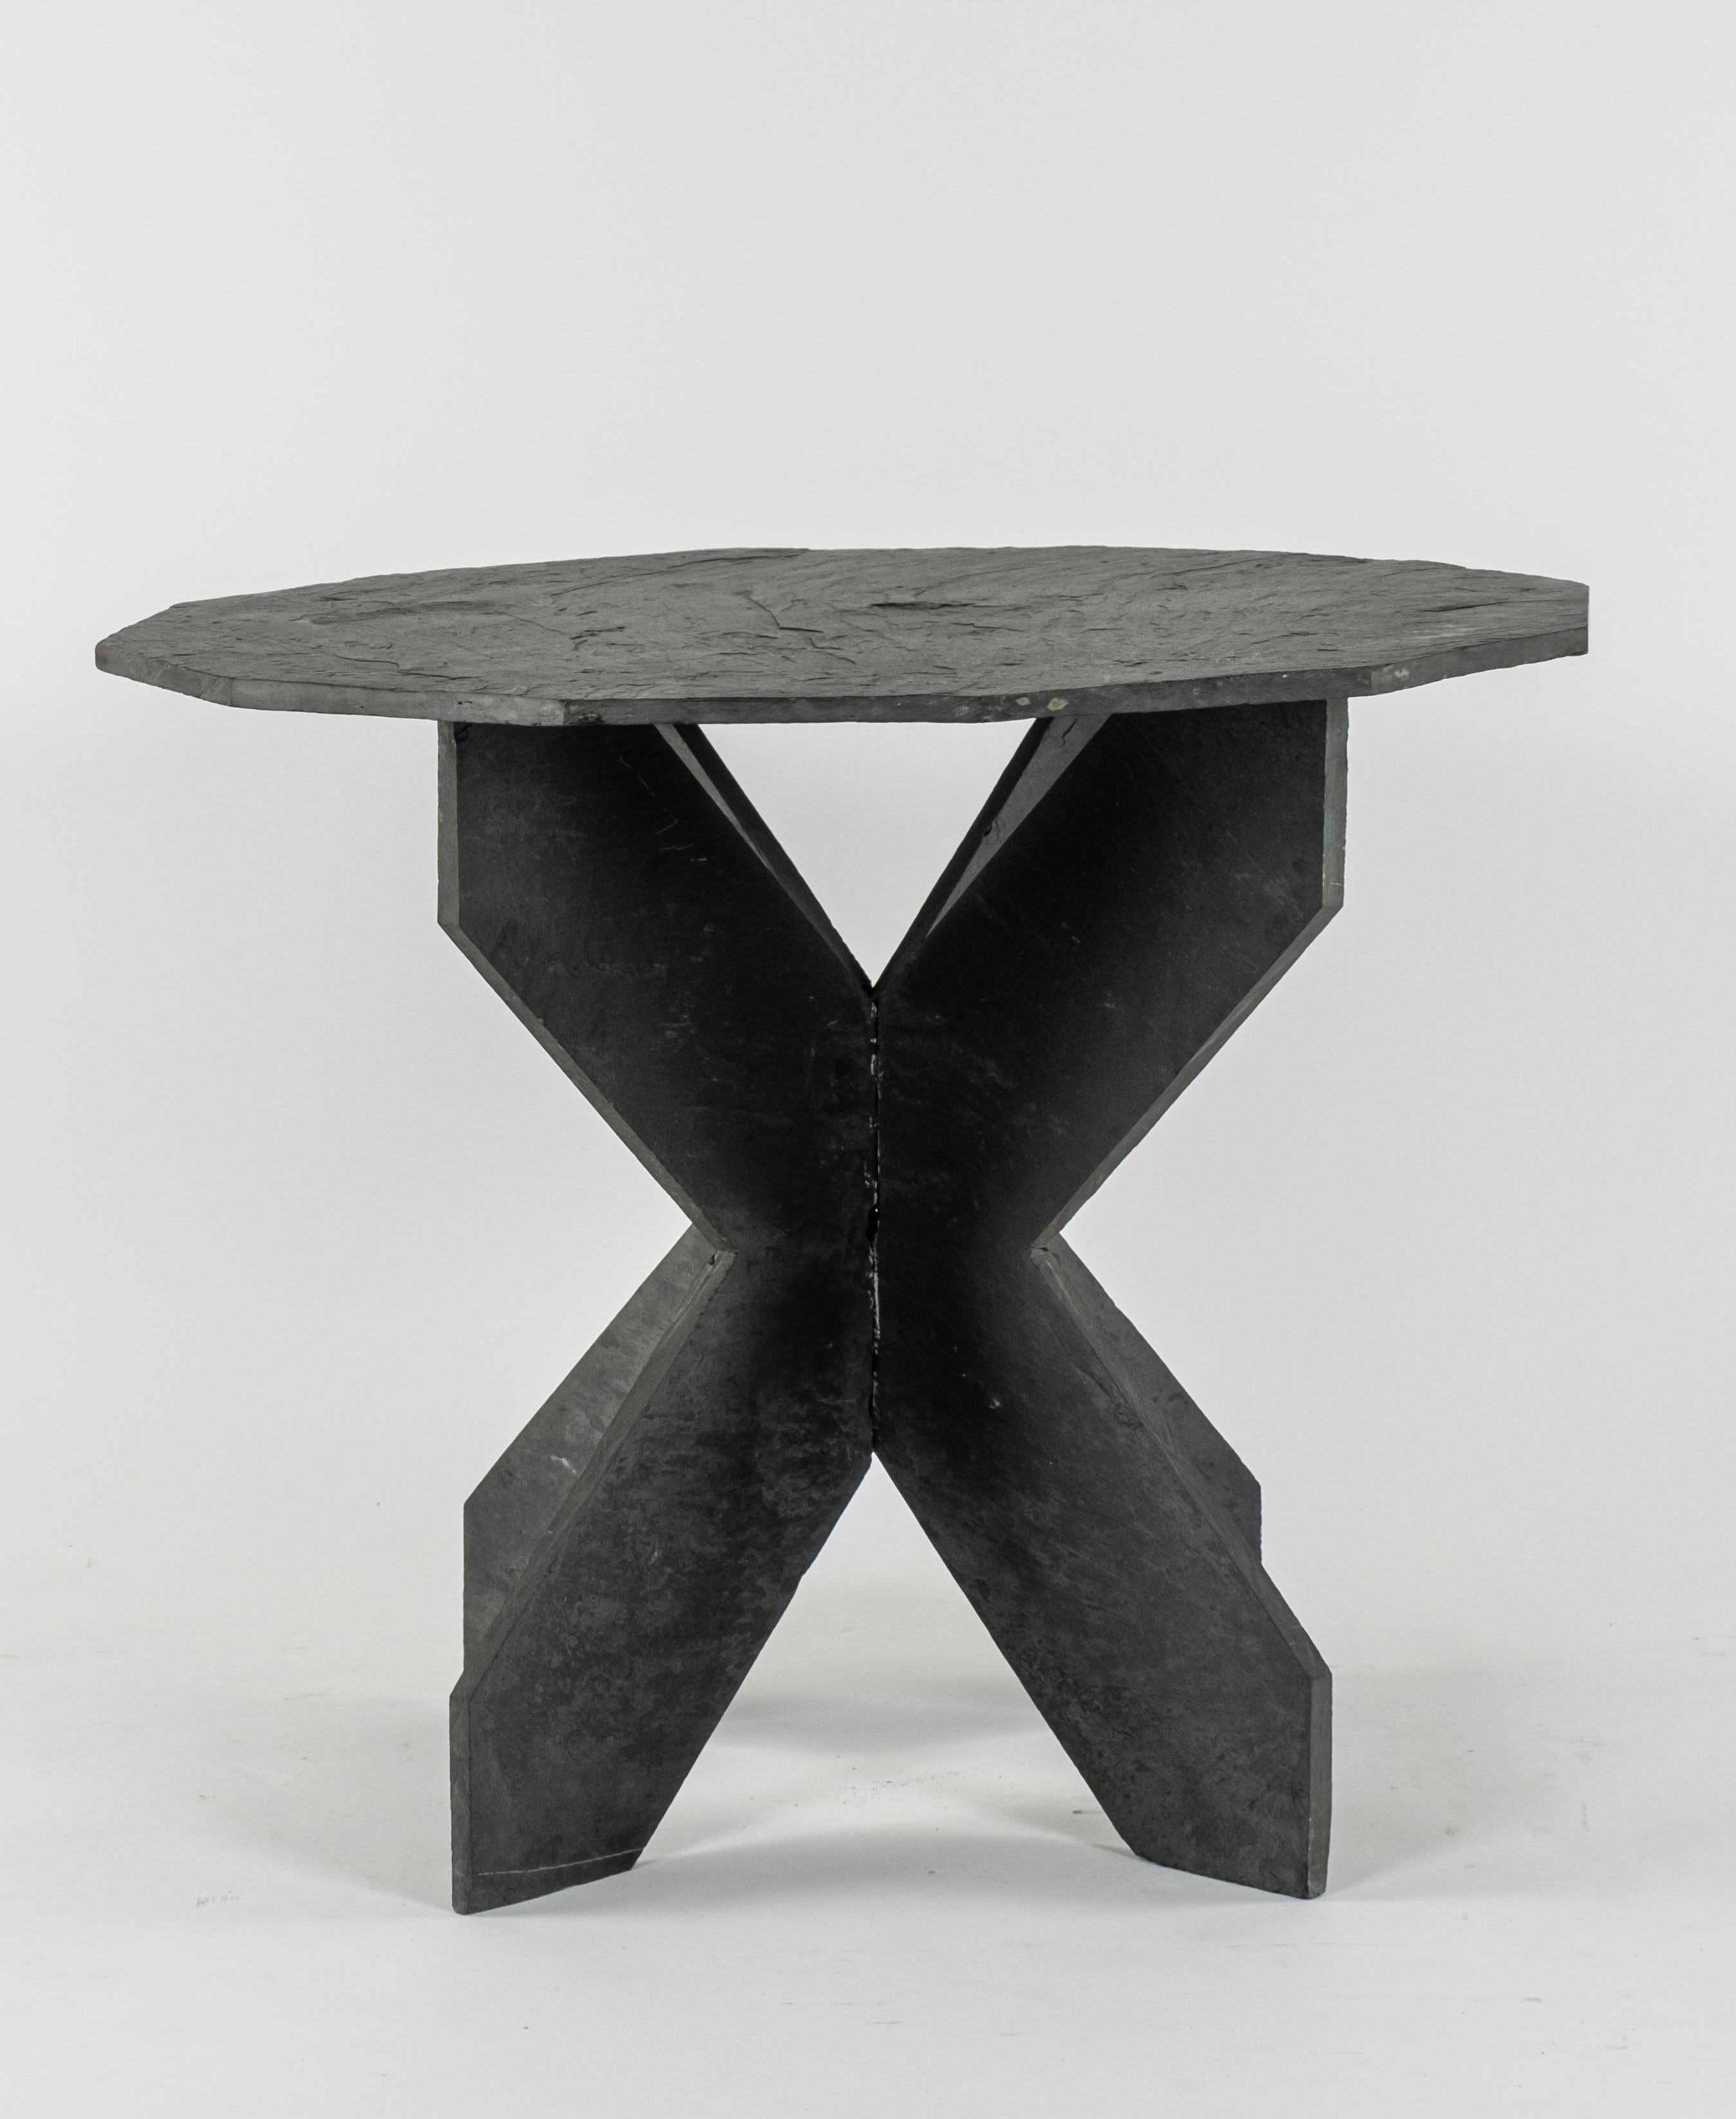  Ardoise-Tisch aus dem 19. Jahrhundert mit 12-seitiger Platte.   Durchmesser: 34,5